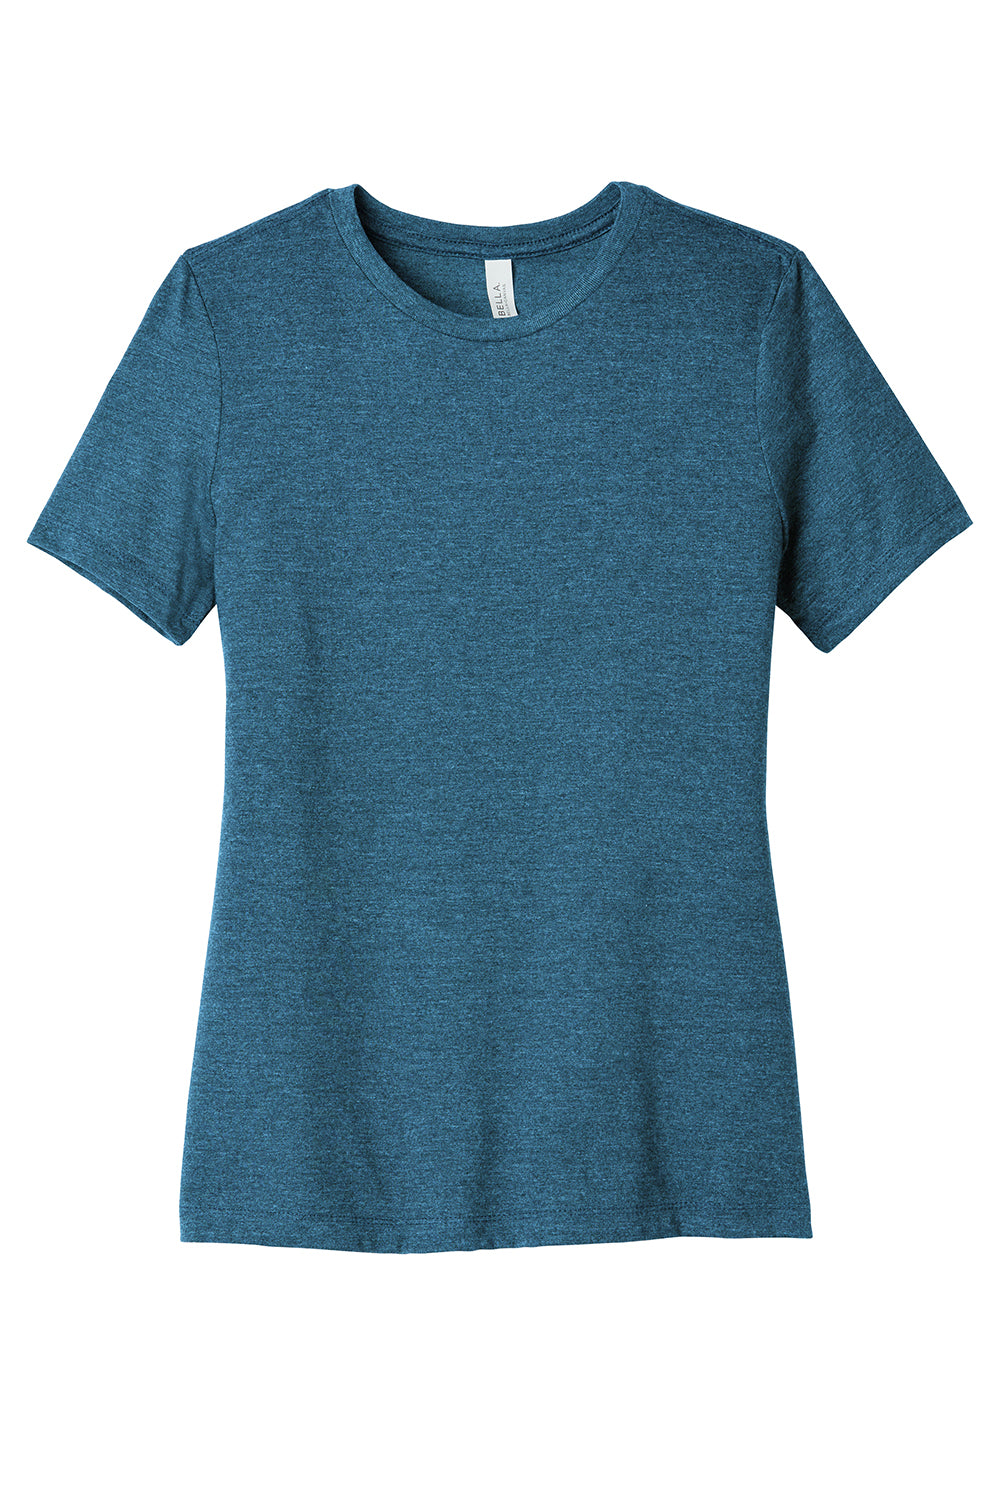 Bella + Canvas BC6400CVC/6400CVC Womens CVC Short Sleeve Crewneck T-Shirt Heather Deep Teal Blue Flat Front